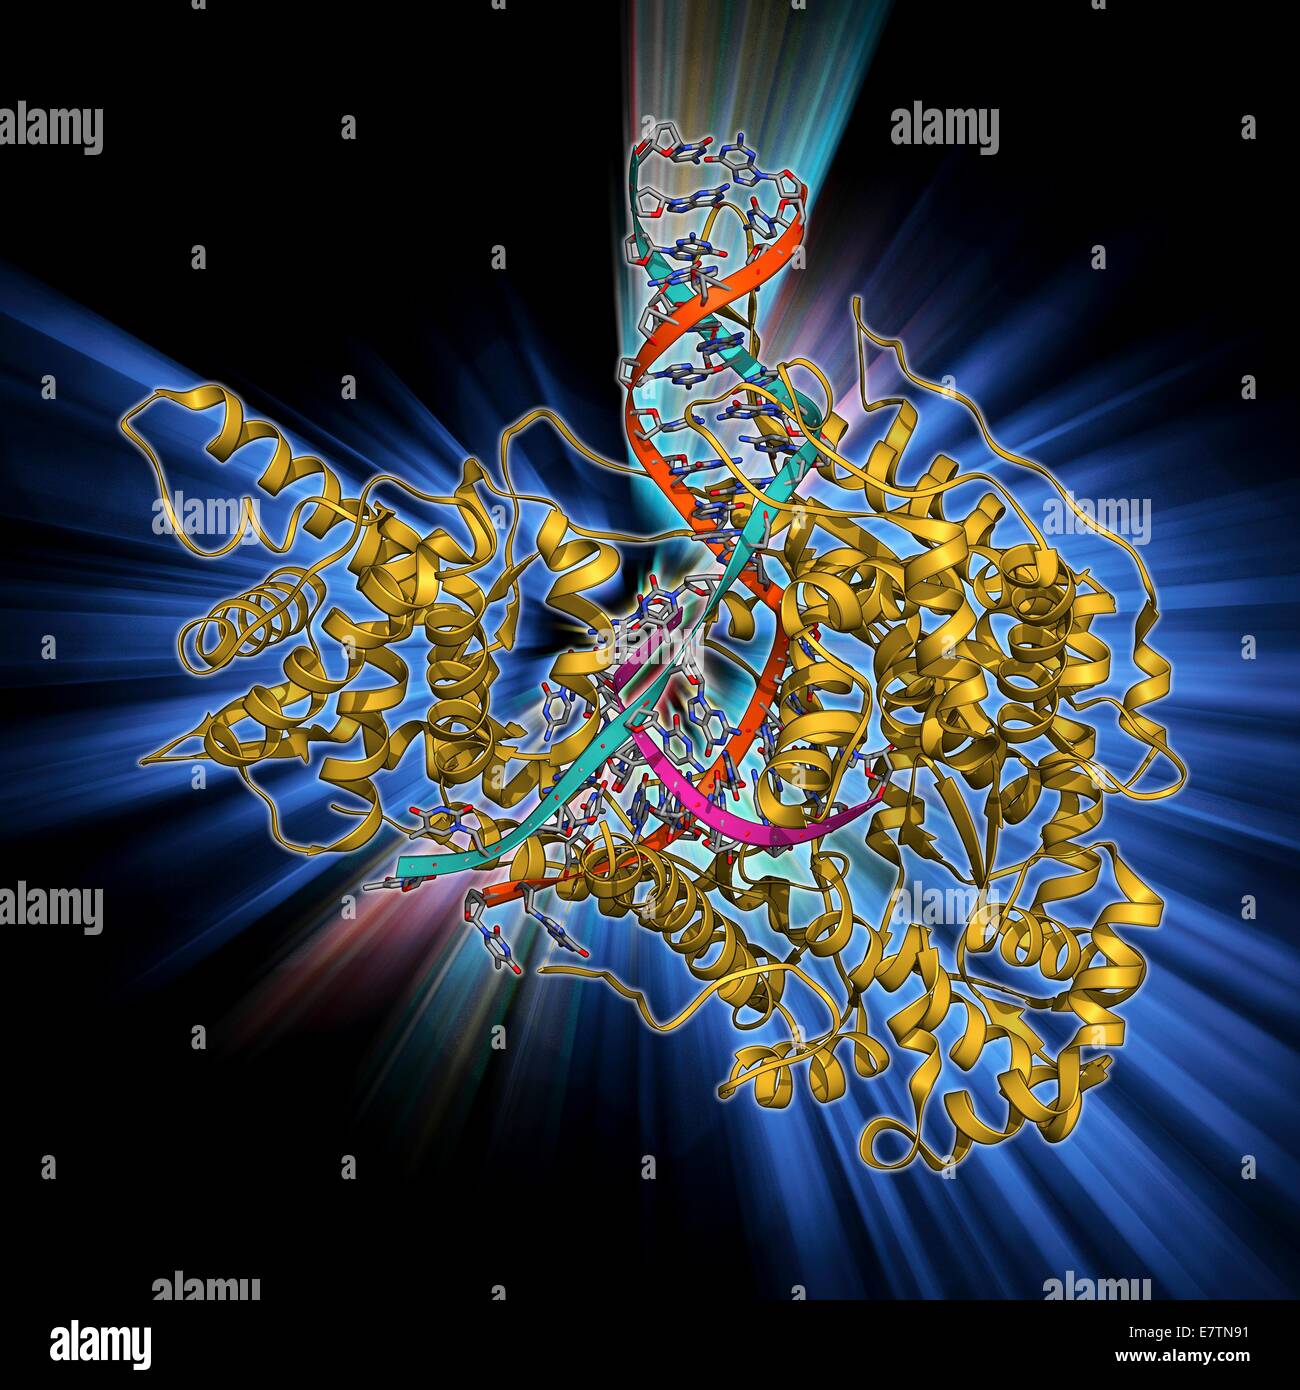 DNA-Transkription. Molekülmodell des Enzyms RNA-Polymerase II, die Synthese einer mRNA (Messenger Ribonukleinsäure) Strang aus einer Vorlage DNA (Desoxyribonukleinsäure). Polymerase II erkennt ein Start-Zeichen auf dem DNA-Strang und dann entlang dem strand Stockfoto